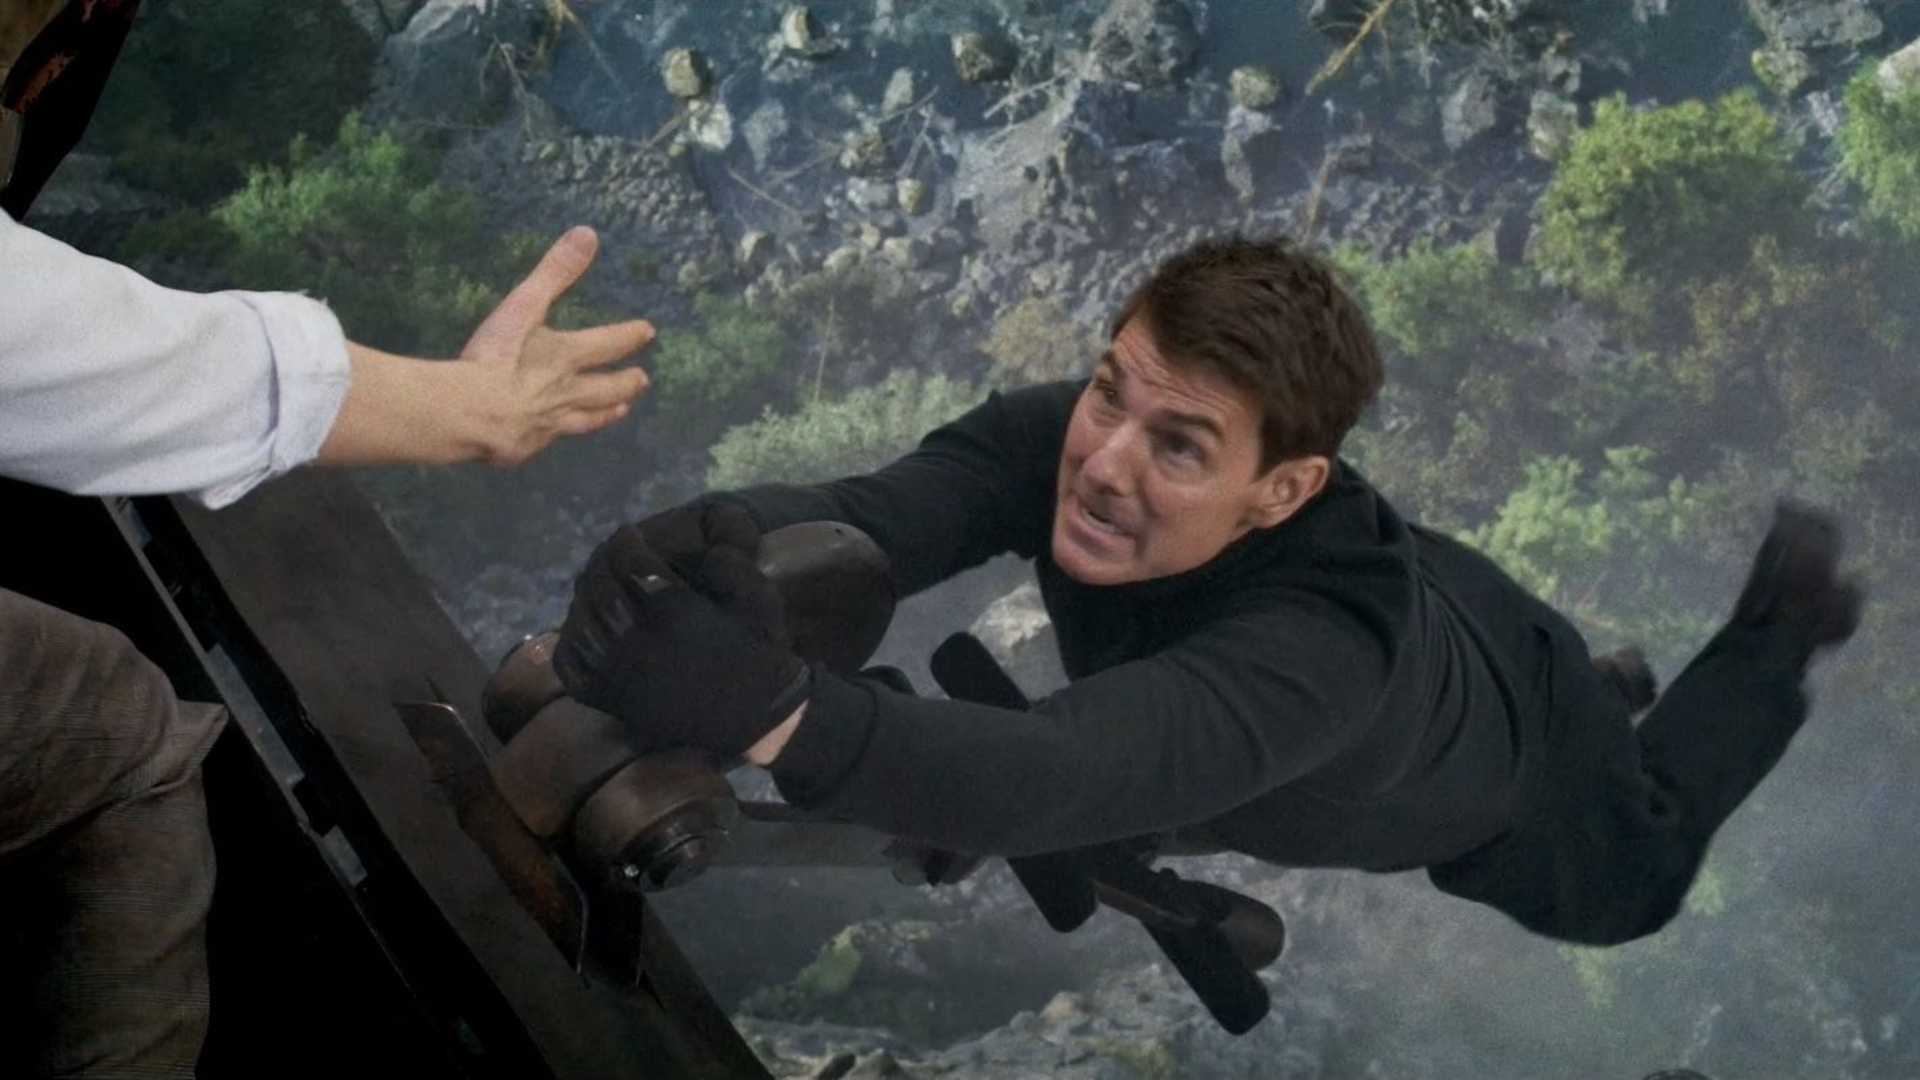 Misión imposible 7 escena del tren con Tom Cruise 